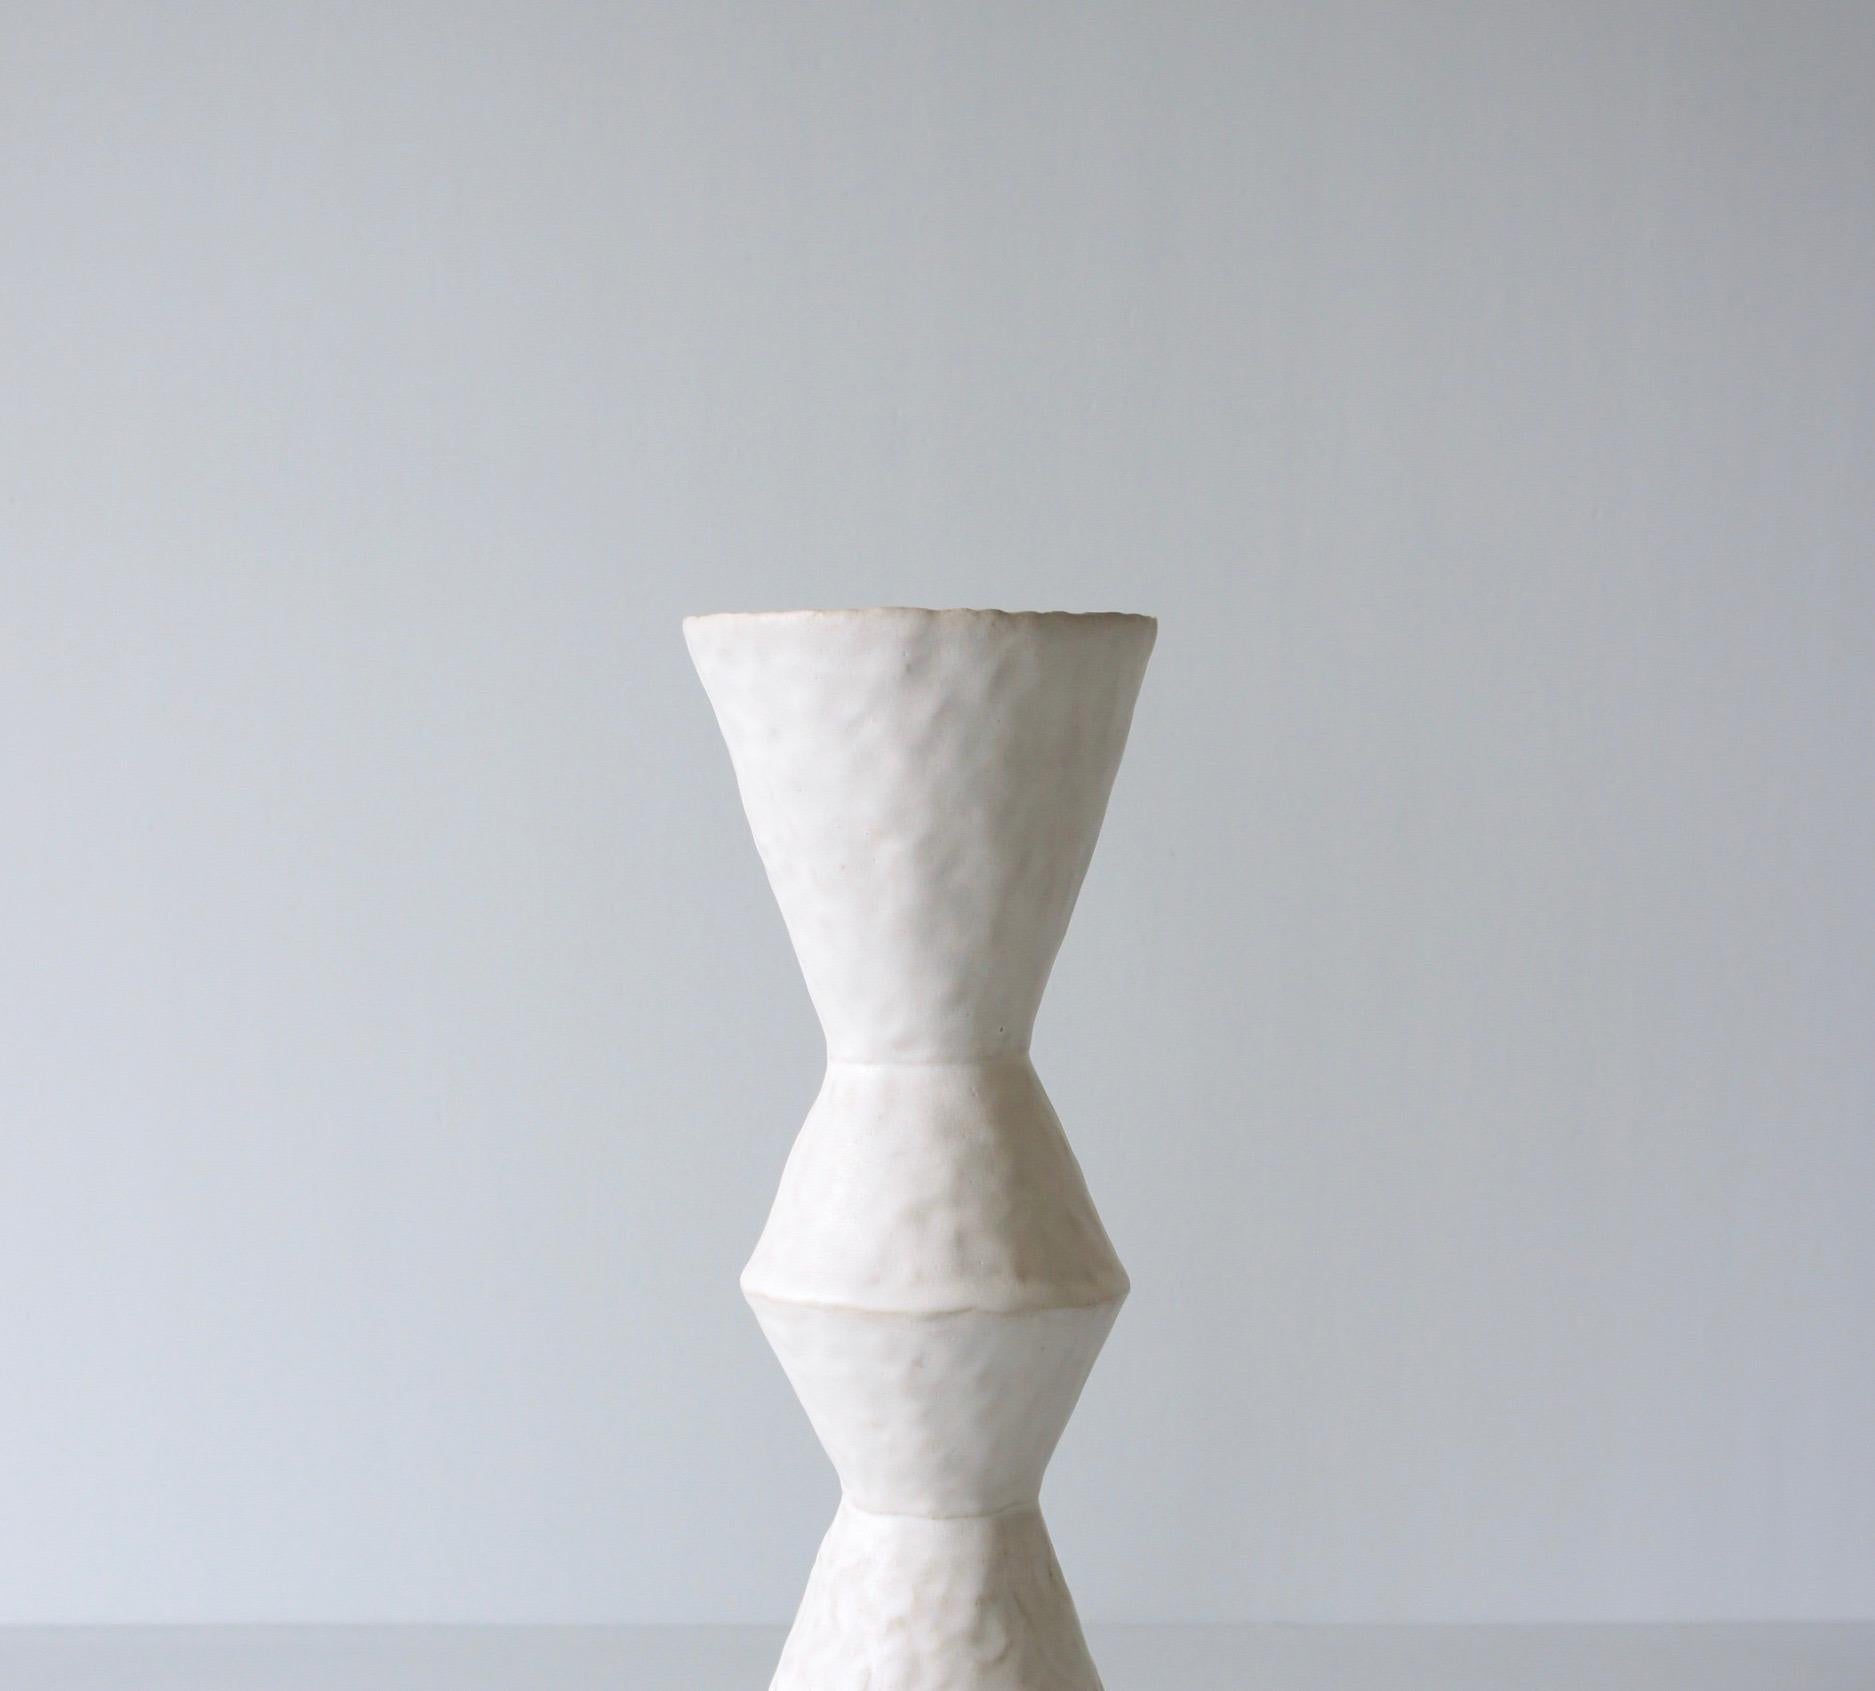 Organic Modern Giselle Hicks Contemporary White Ceramic Vase, 2019